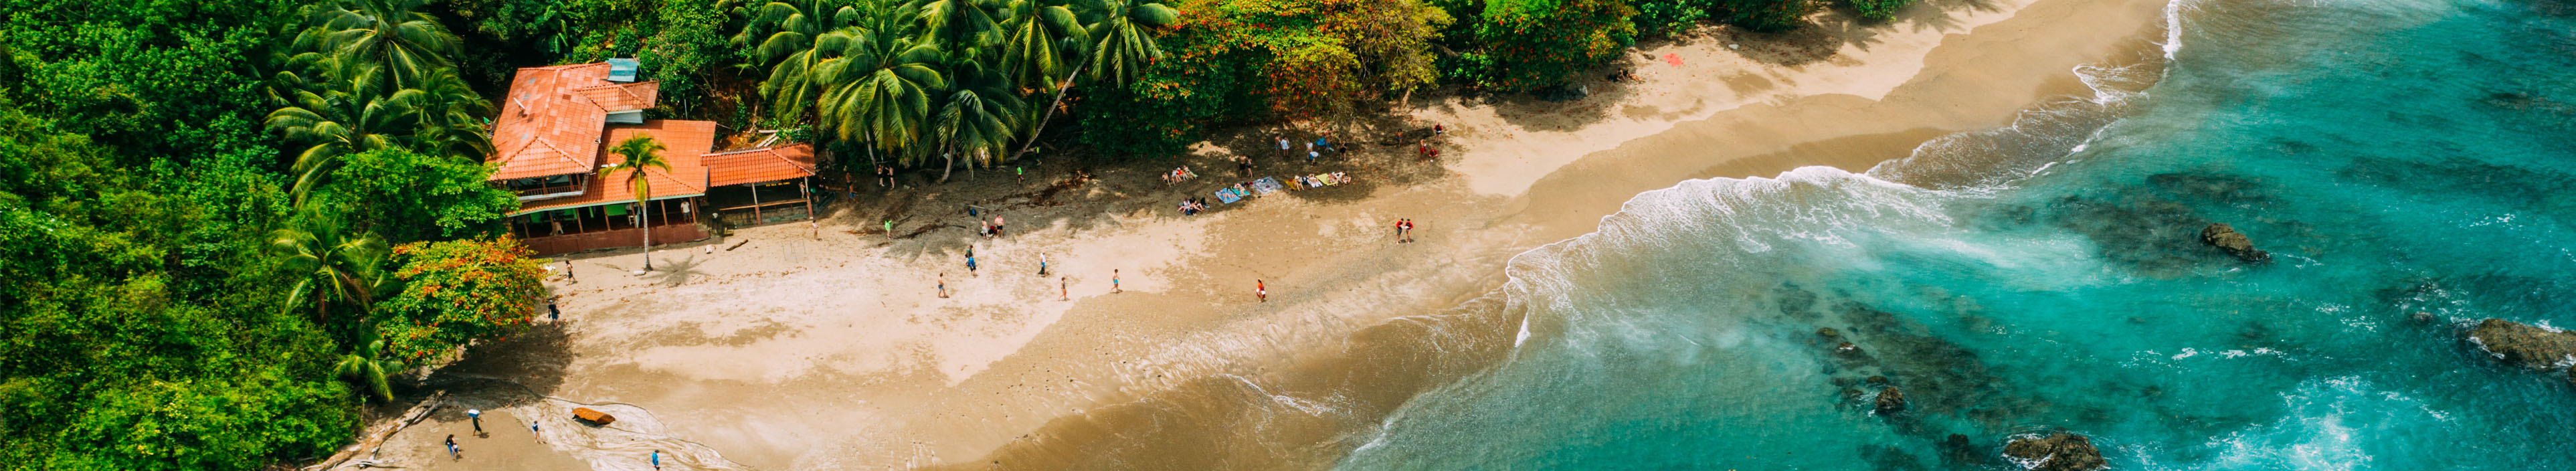 Dschungel und Strand in Costa Rica